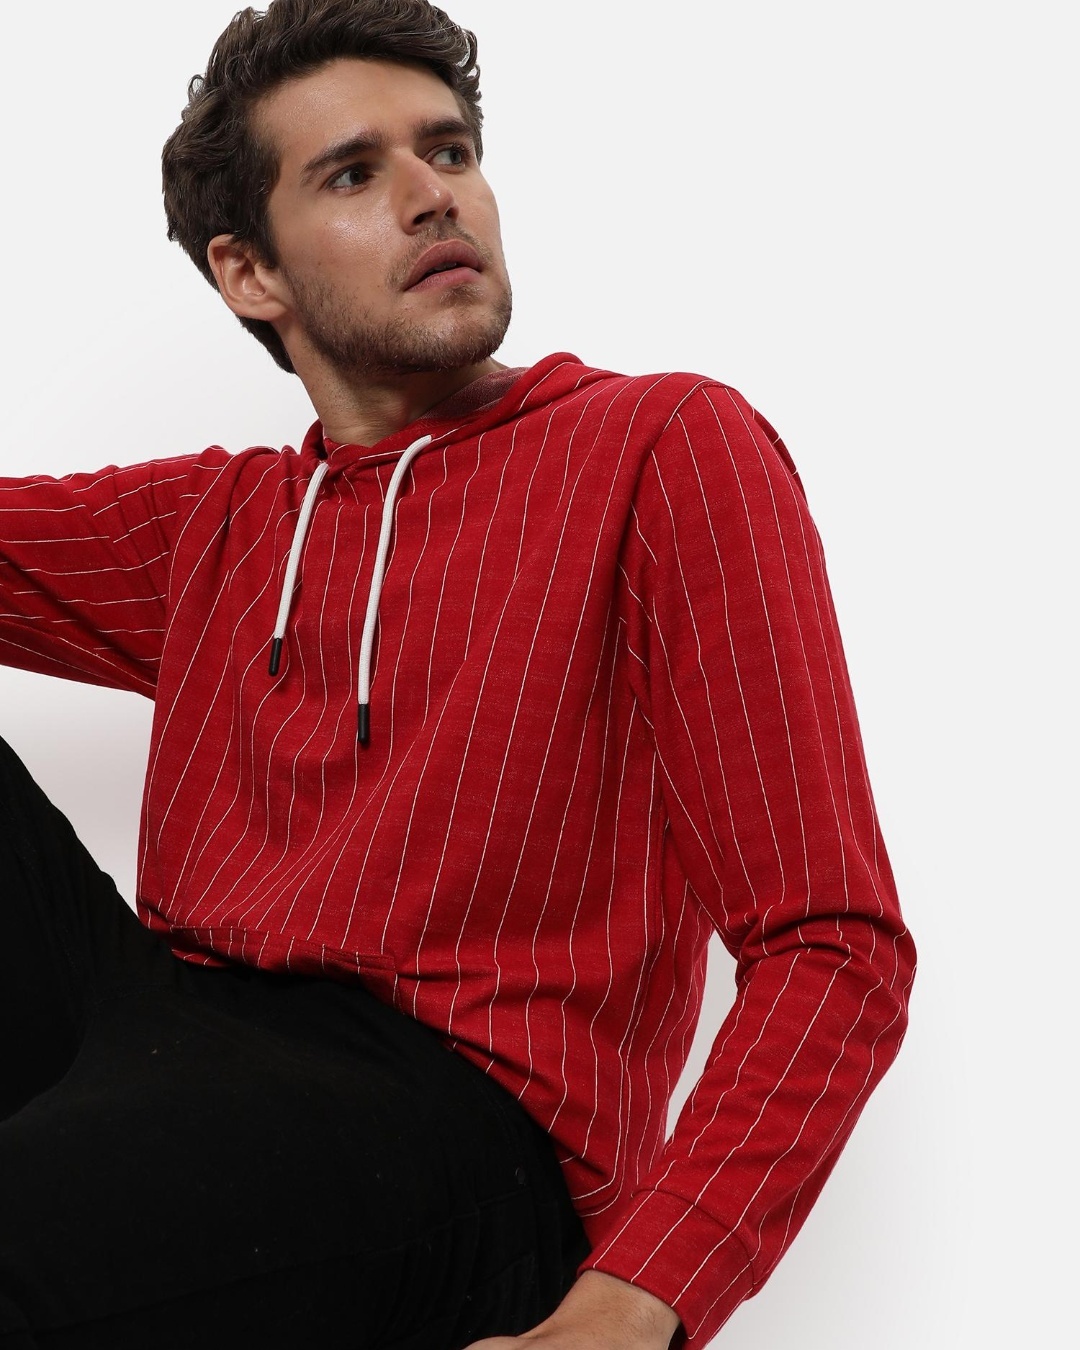 Buy Men's Red Striped Hooded Sweatshirt for Men Red Online at Bewakoof